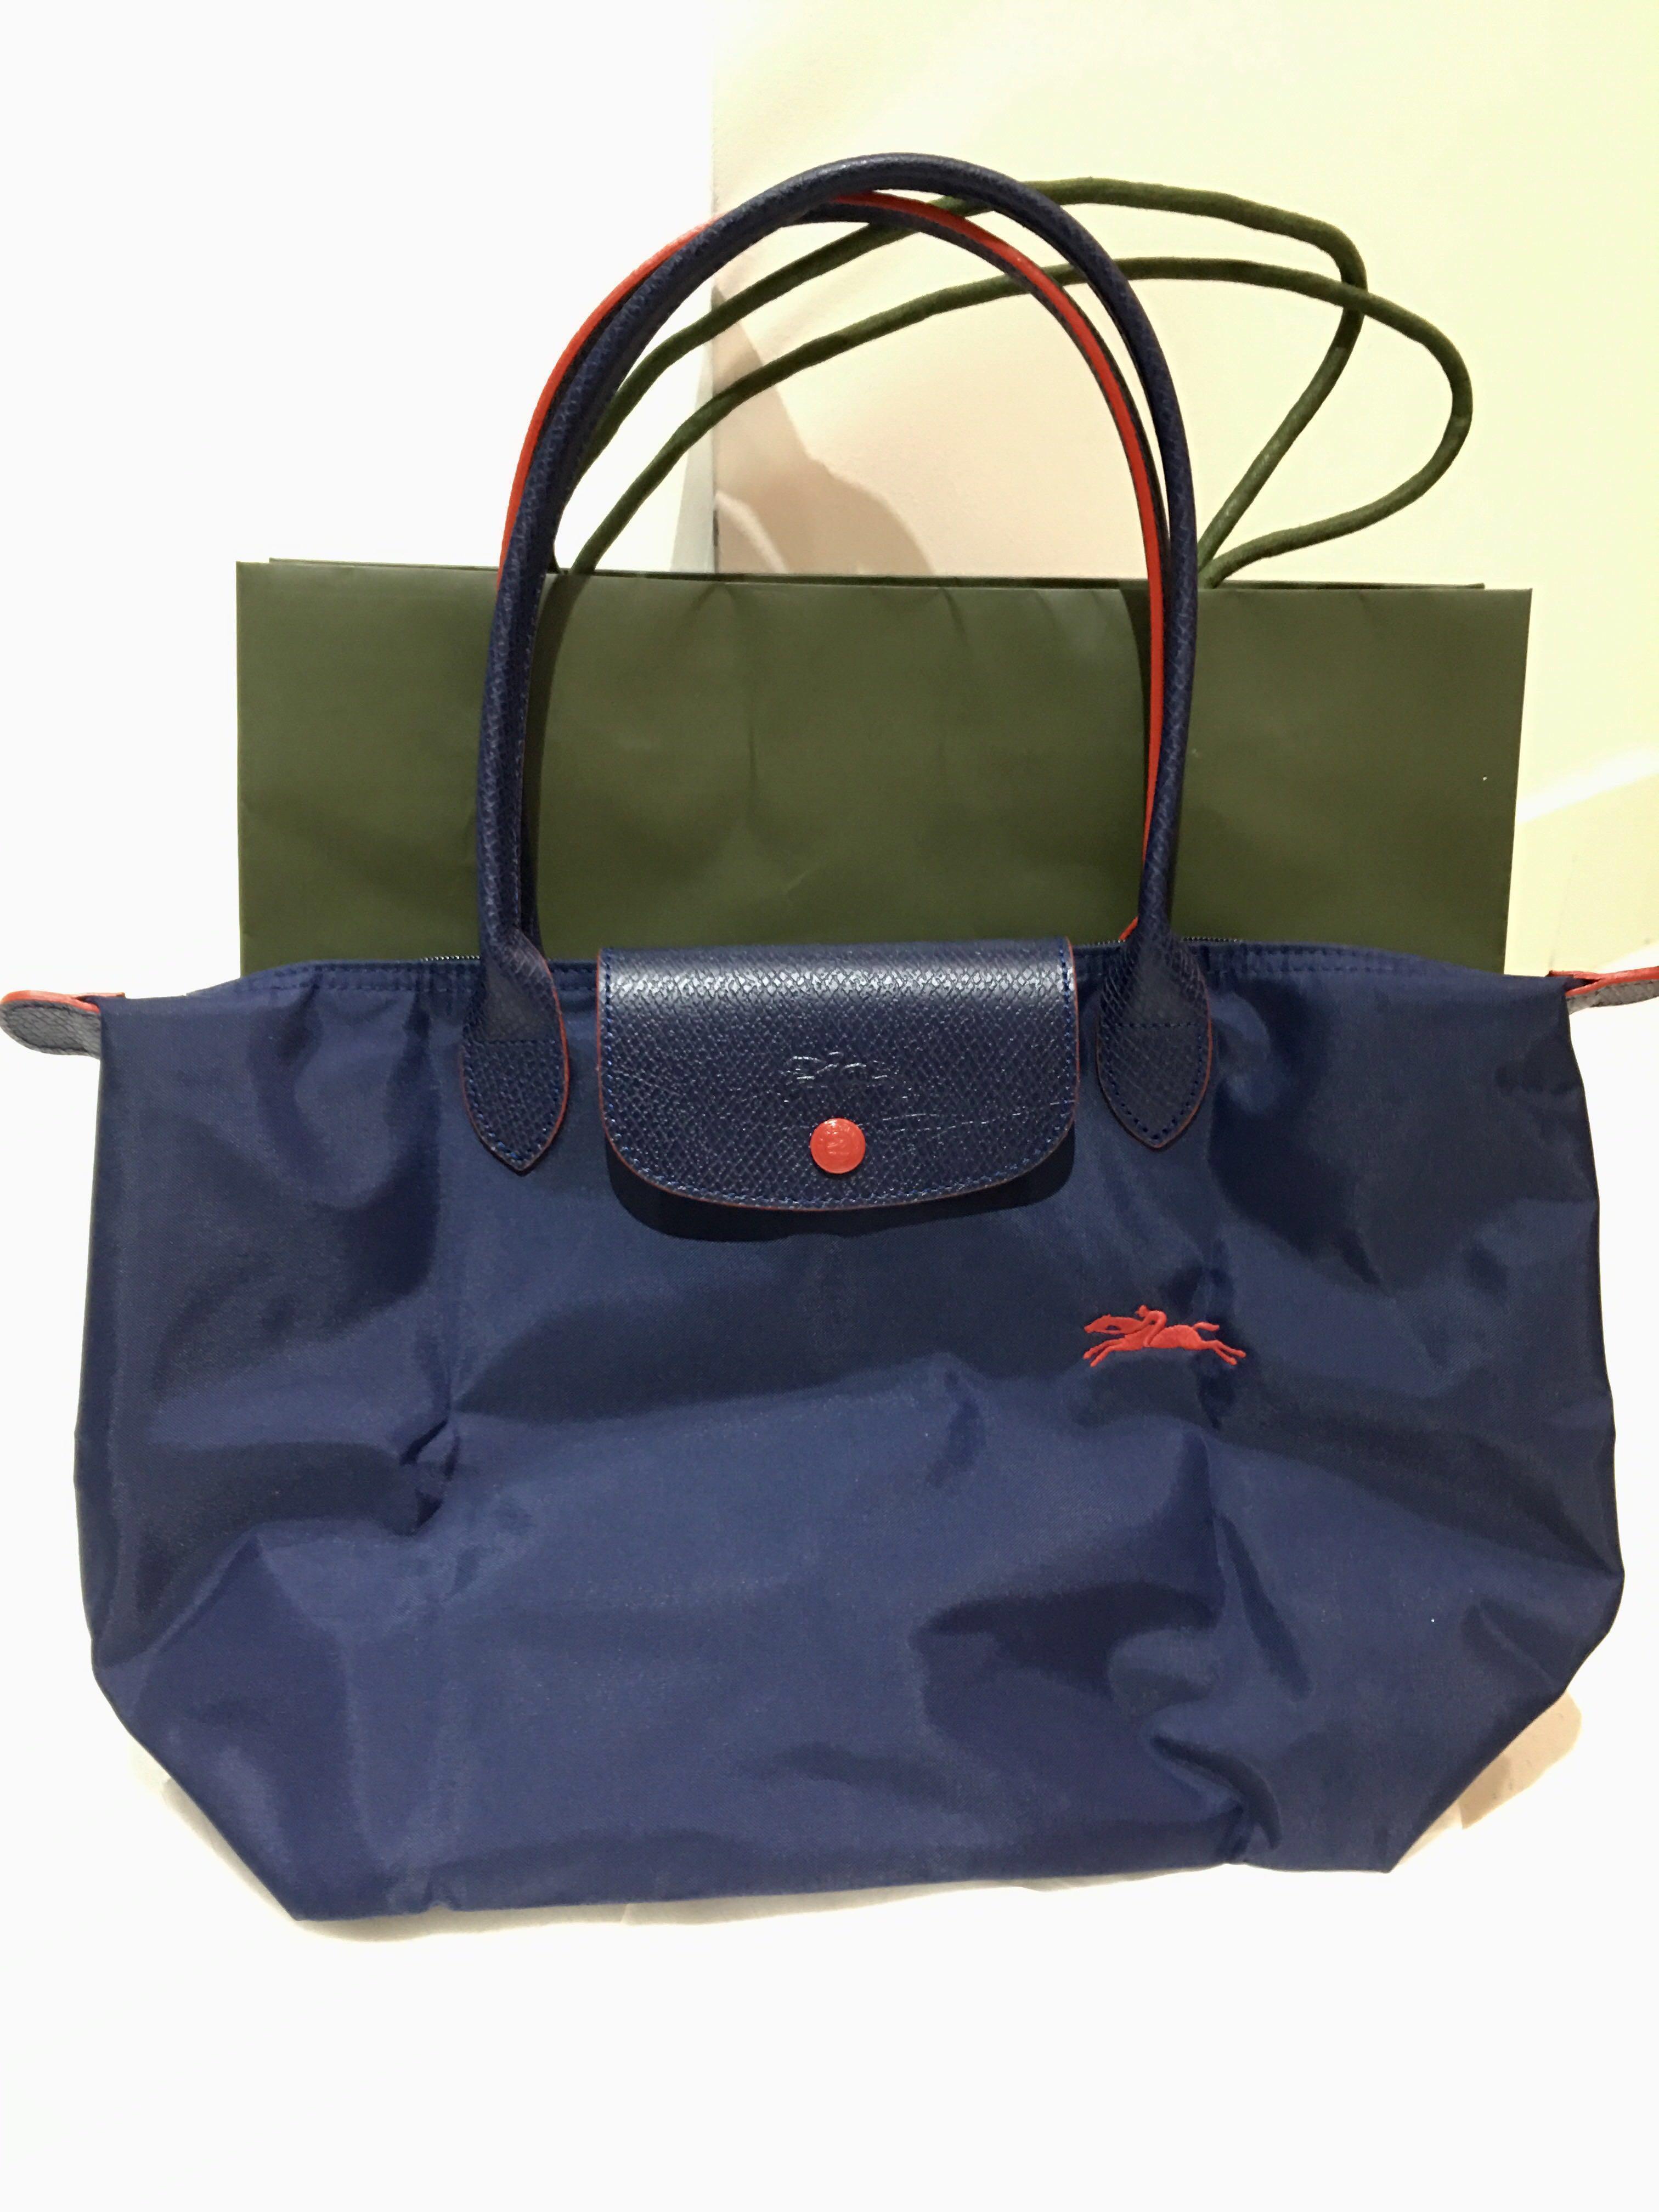 Authentic Longchamp Bag medium (2018 